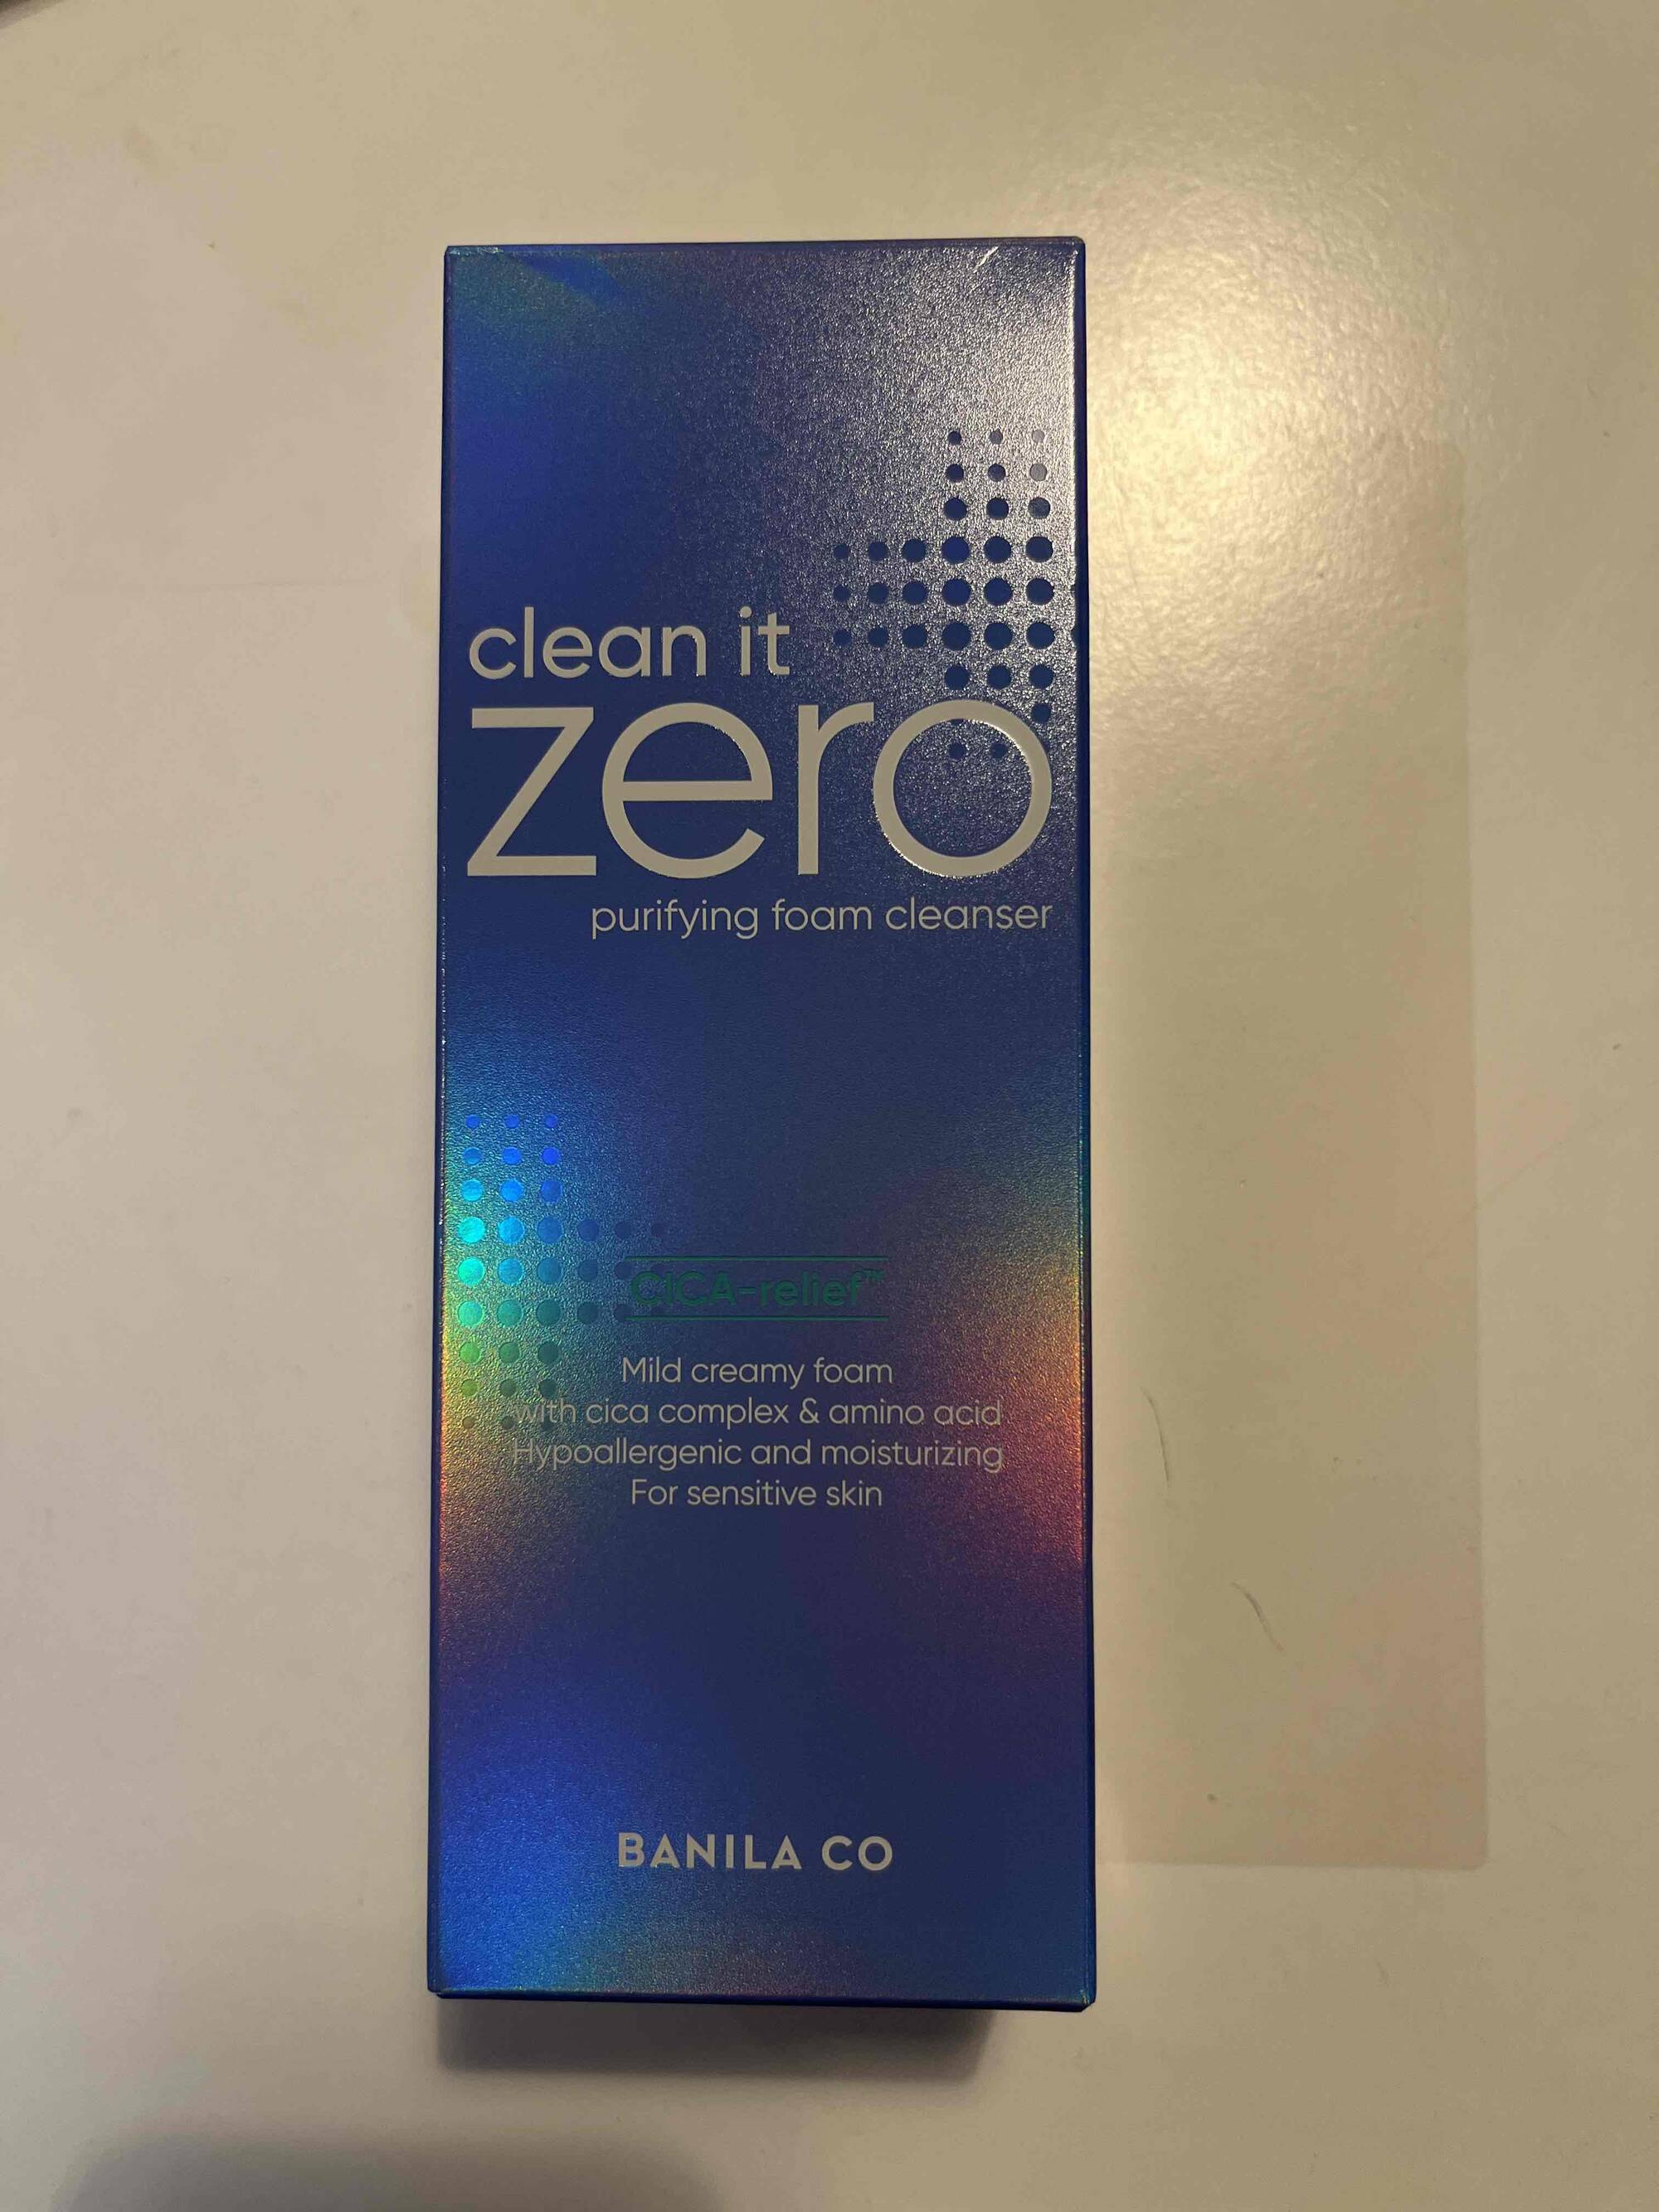 BANILA CO - Clean it zero - Purifying foam cleanser